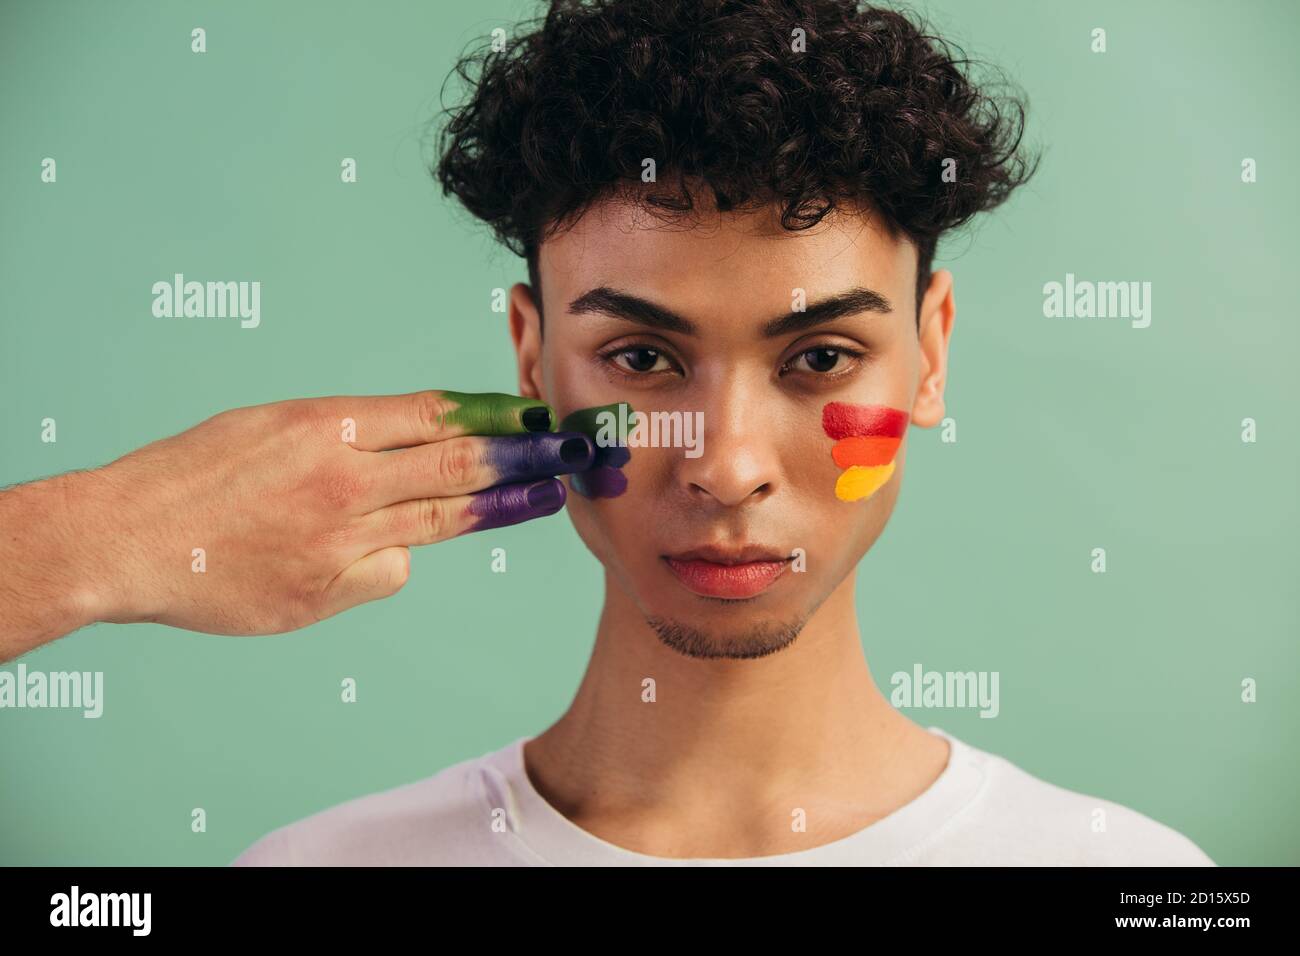 Gros plan d'une main peignant les couleurs du drapeau LGTB sur le visage de l'homme. Homme transgenre avec drapeau de fierté gay peint sur ses joues. Banque D'Images